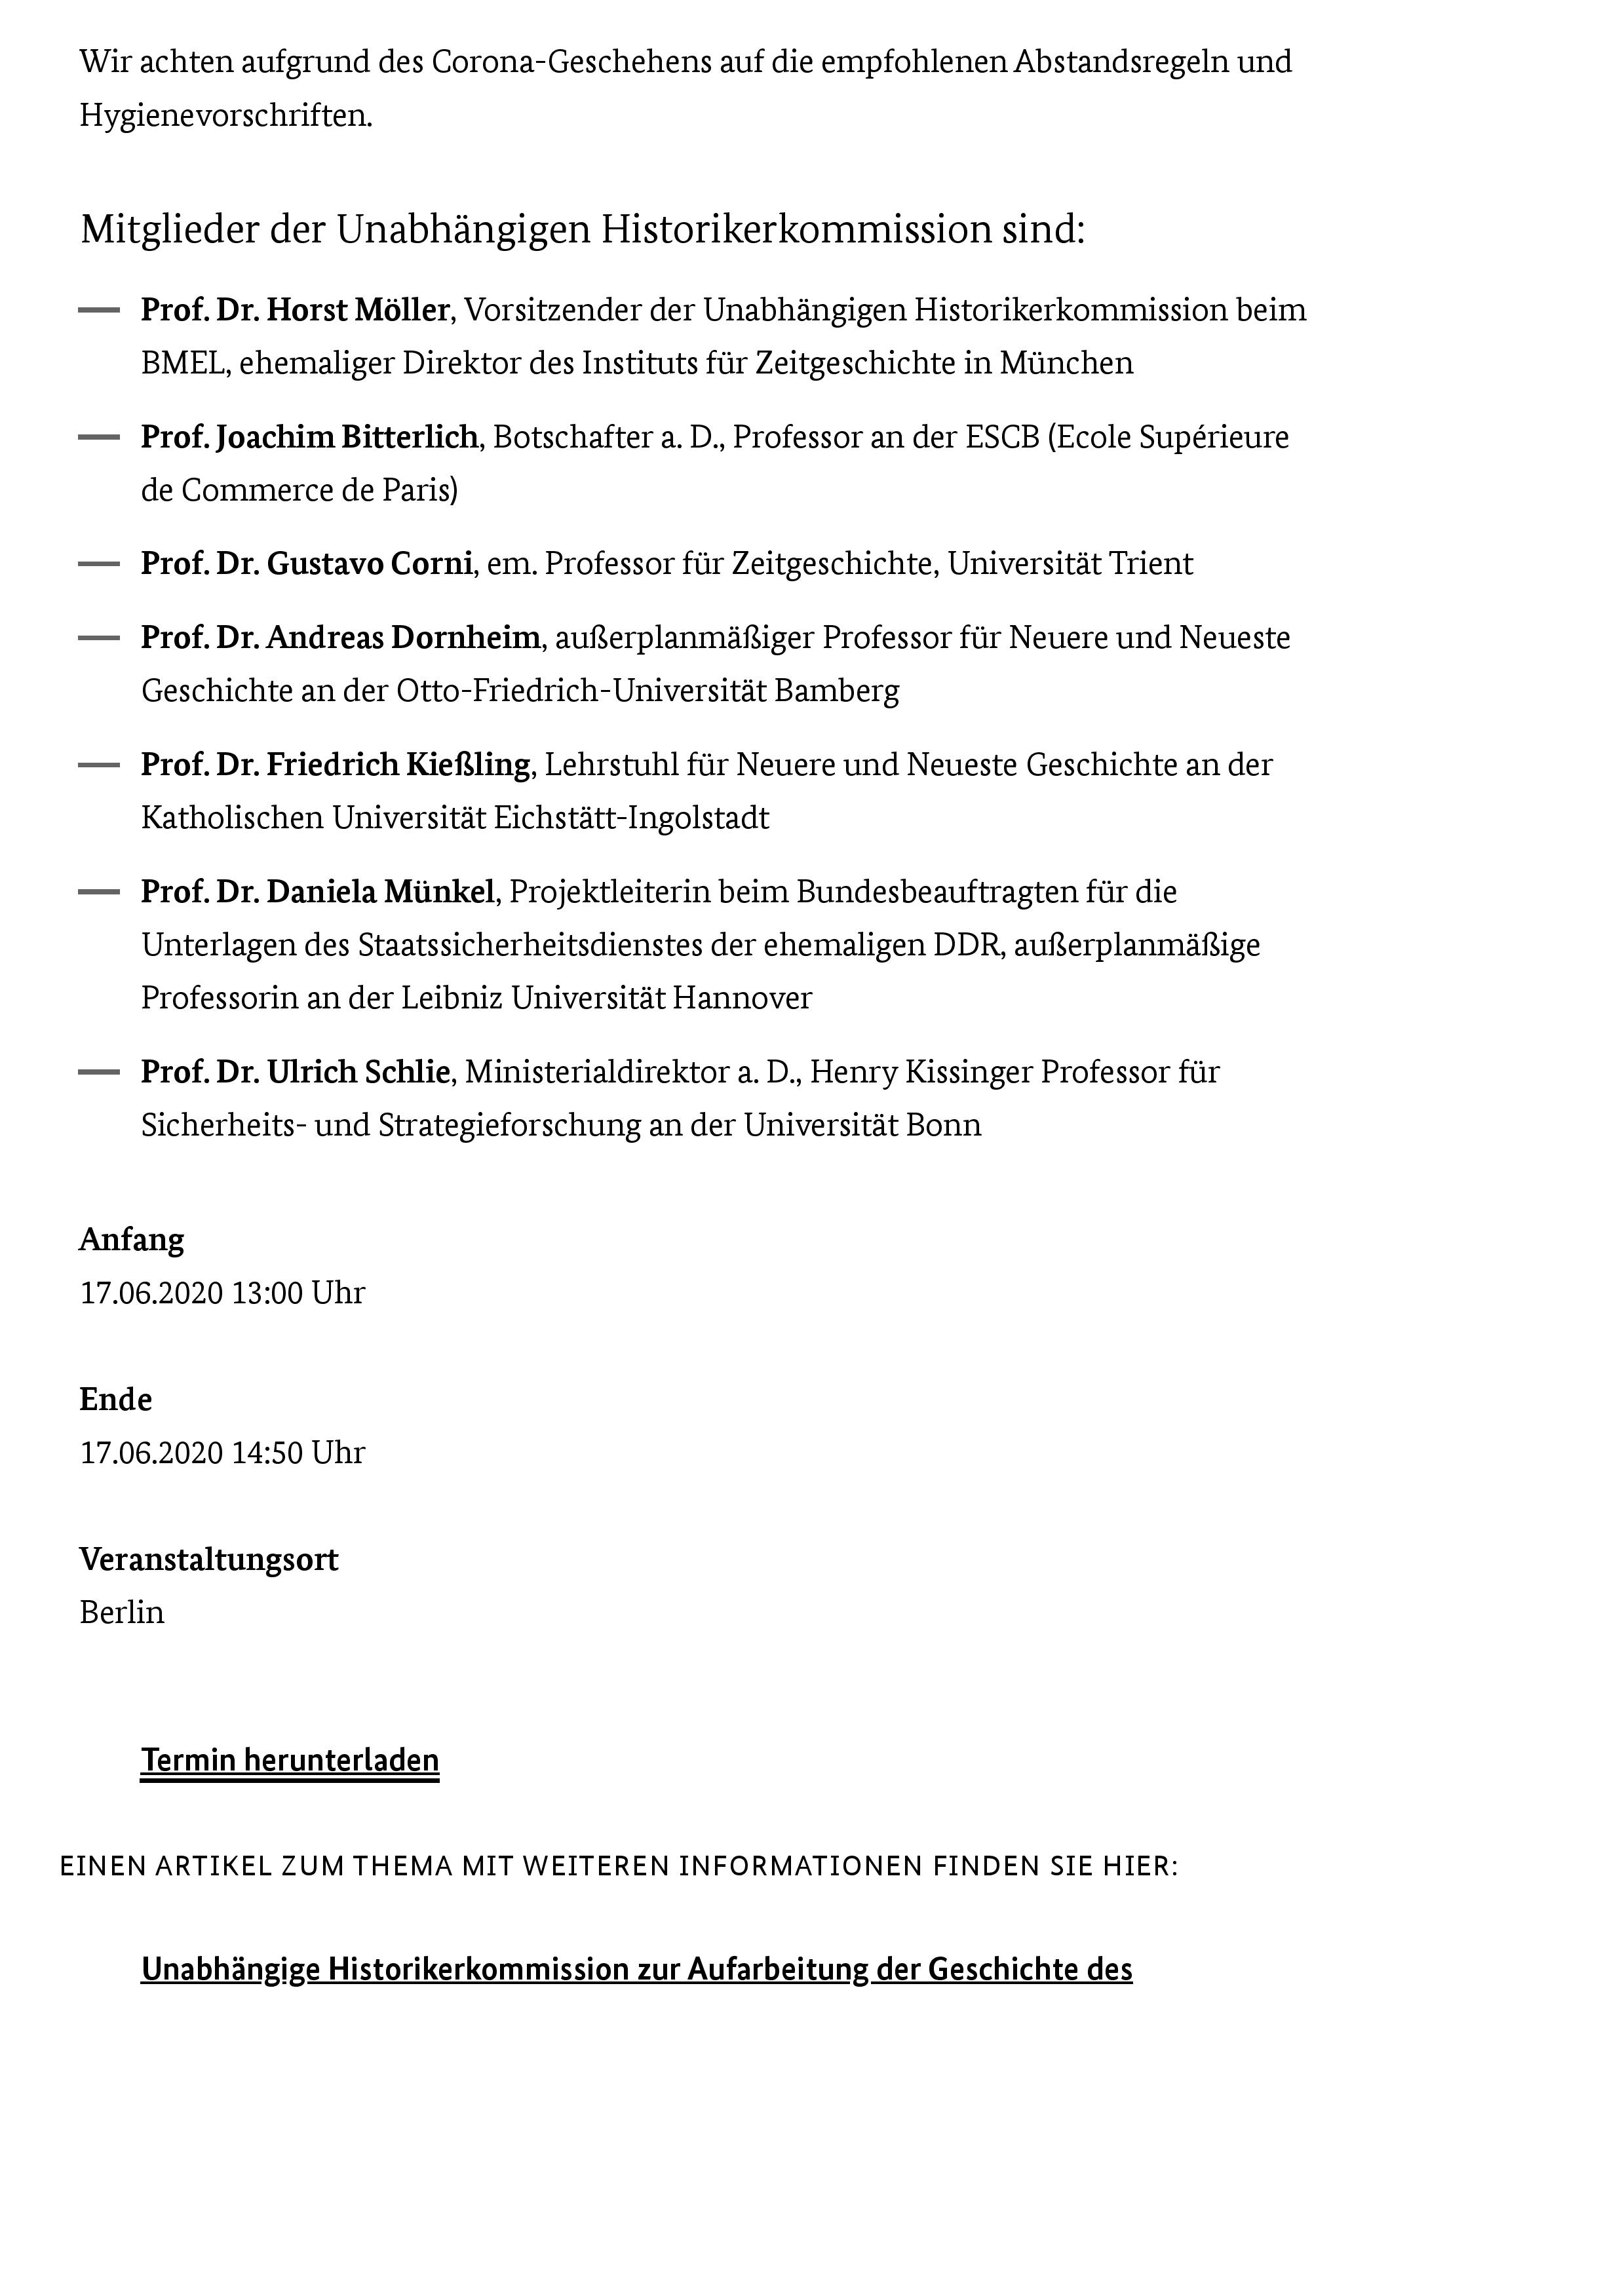 BMEL - Veranstaltungs- und Termin-Uebersicht - Unabhängige Historikerkommission übergibt Abschlussbericht an Bundesministerin Julia Klöckner-page-002